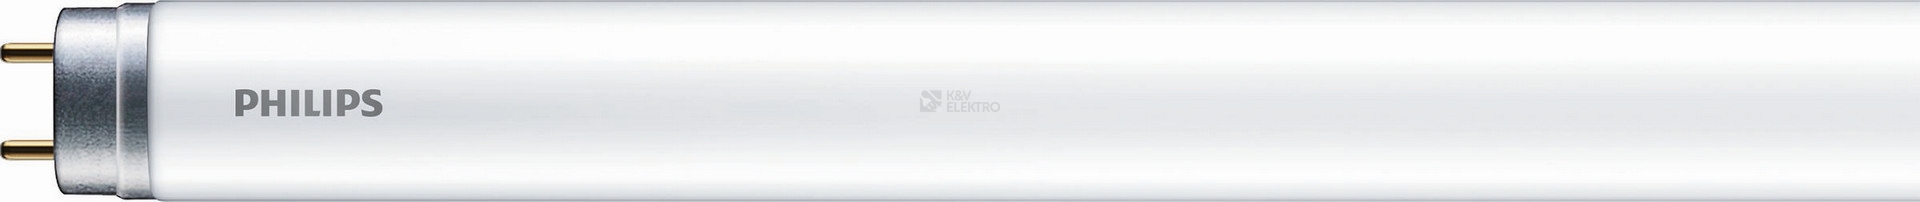 Obrázek produktu LED trubice zářivka Philips Ecofit LEDtube 120cm 16W (36W) neutrální bílá 4000K T8 G13 EM/230V 0